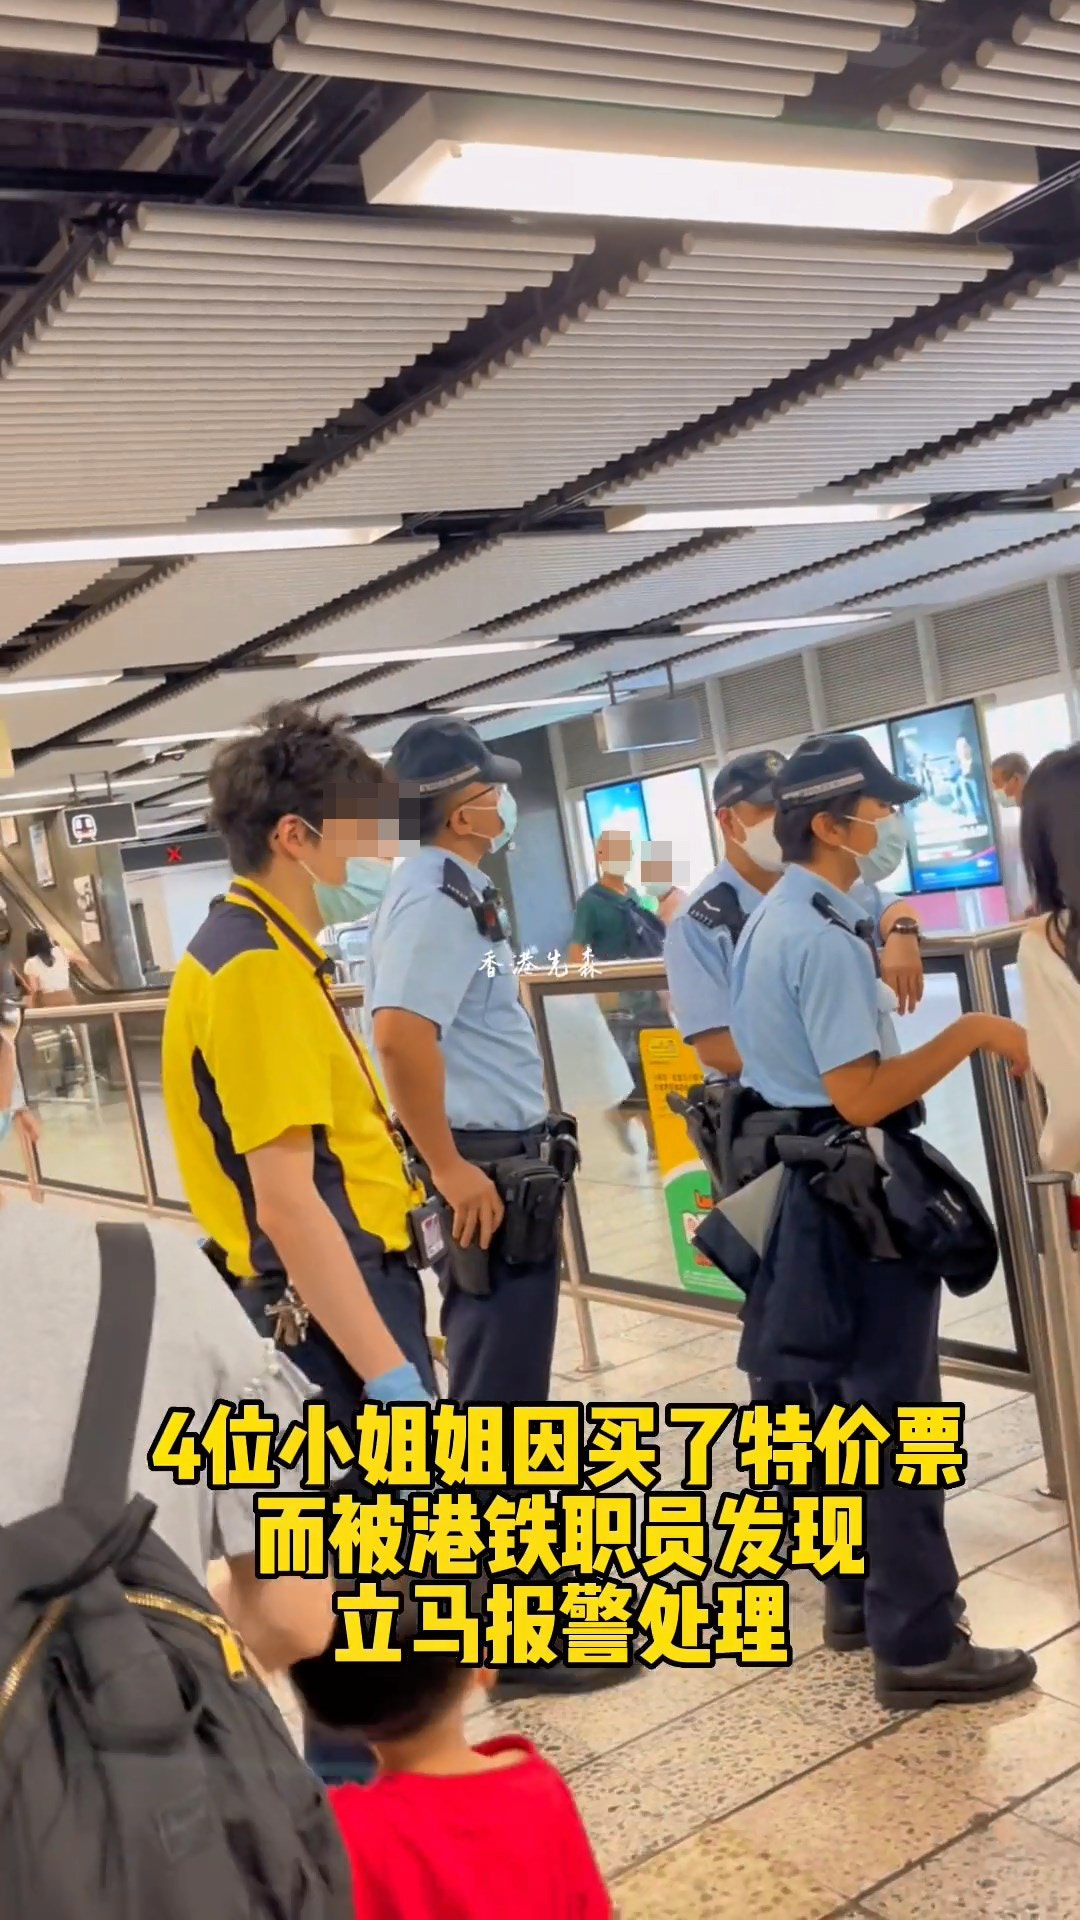 从影片见到，4名年轻女子正在港铁车站内，旁边有3名警察处理，另有一名男港铁职员在场，路过的人都好奇张望。（影片截图）